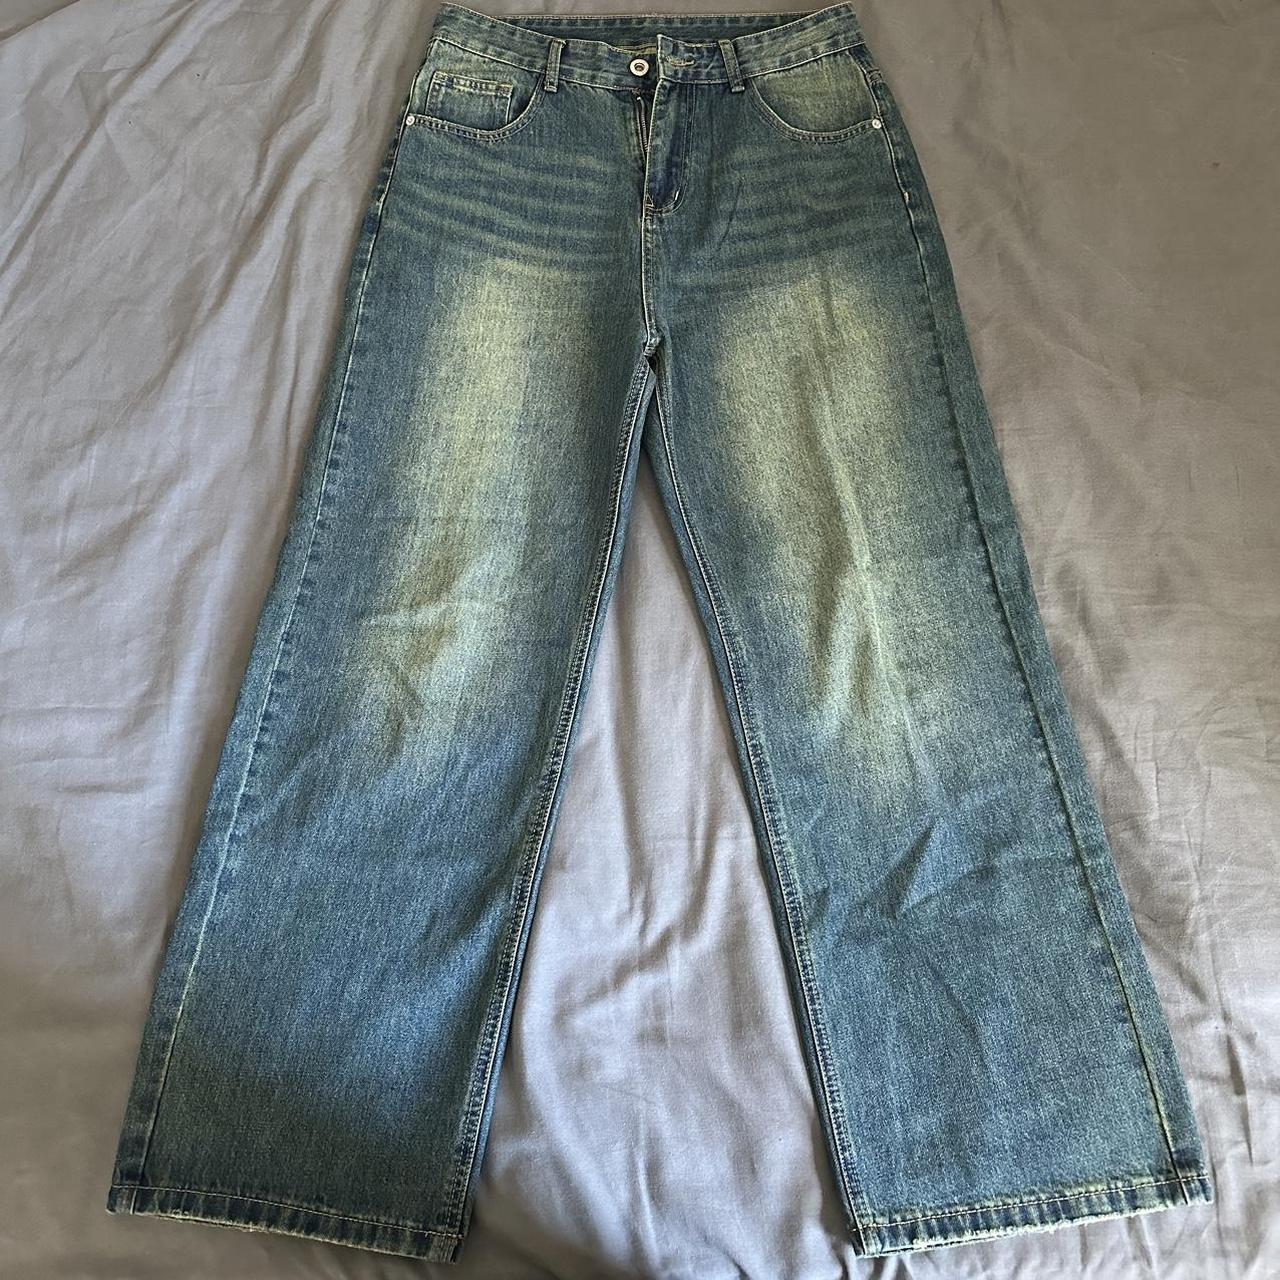 Washed baggy jeans Blue jeans Like new #vintage... - Depop